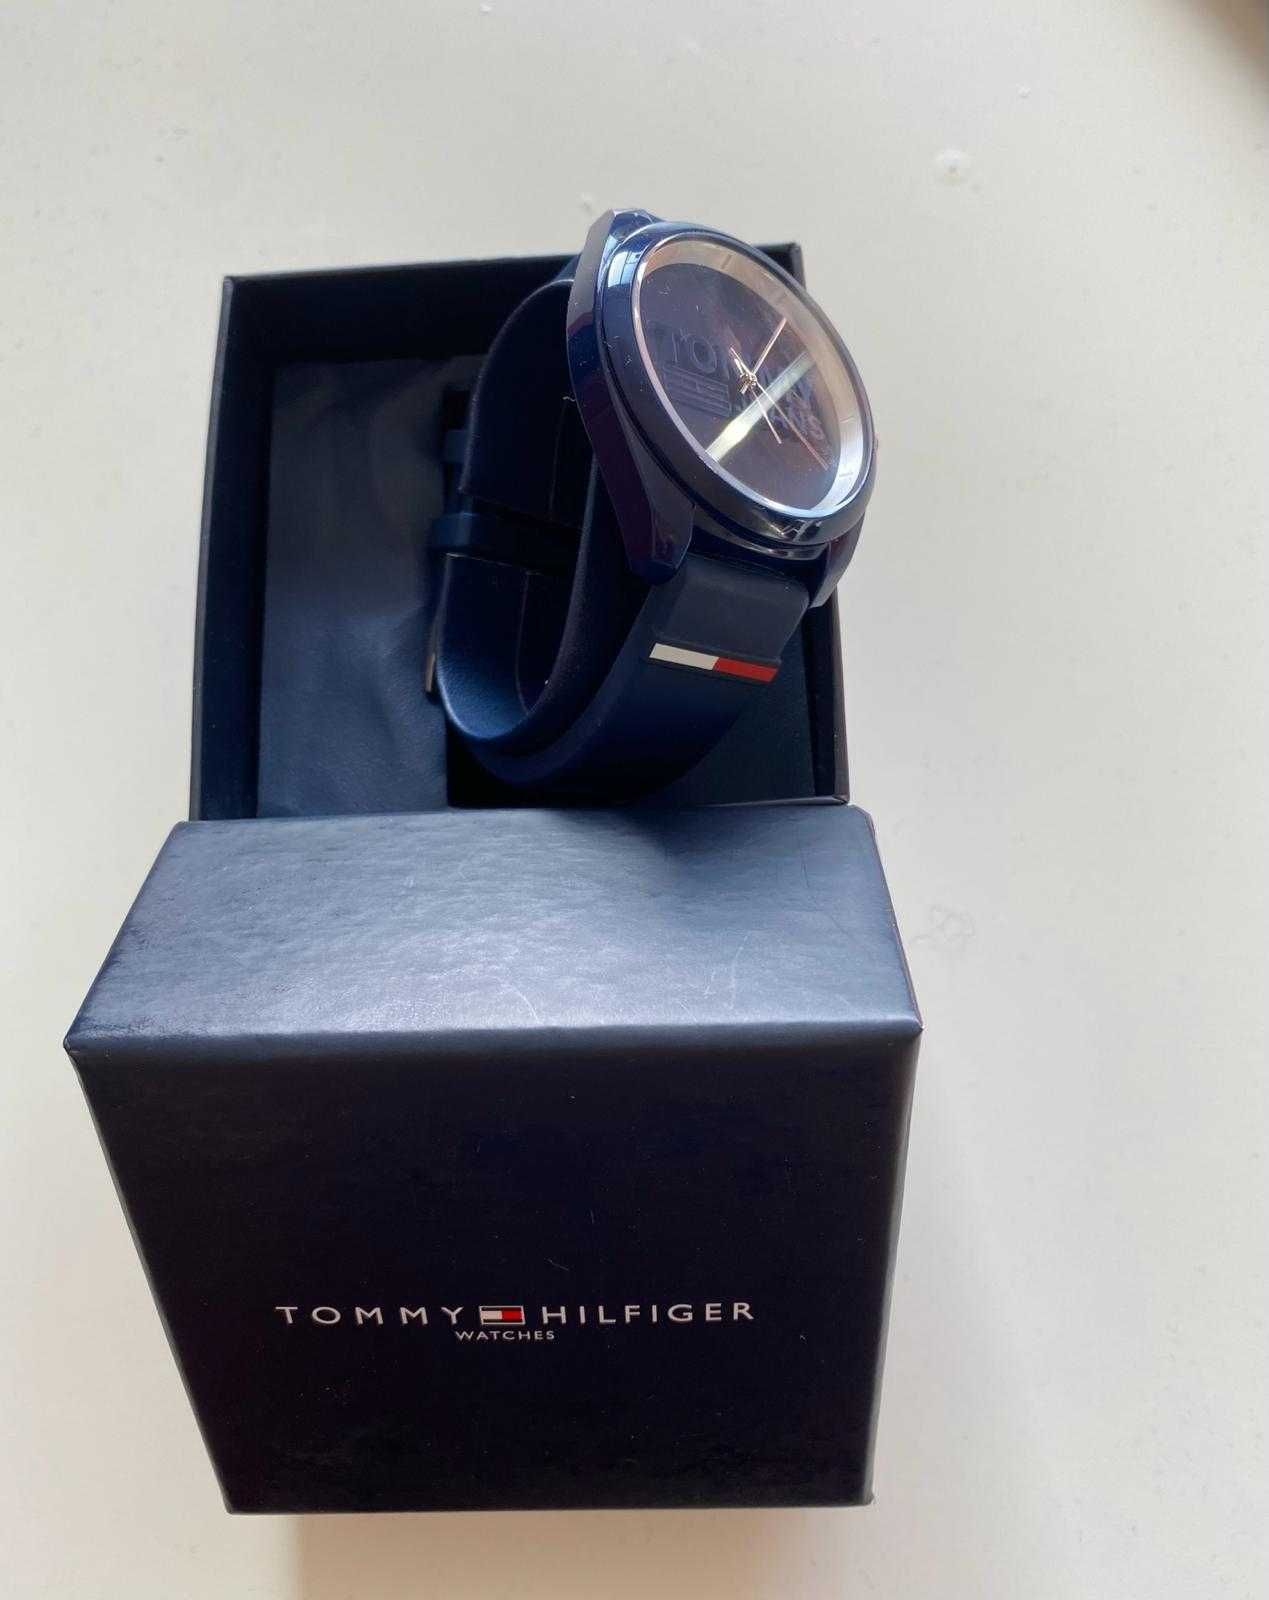 Relógio Tommy Hilfiger azul (Como novo)